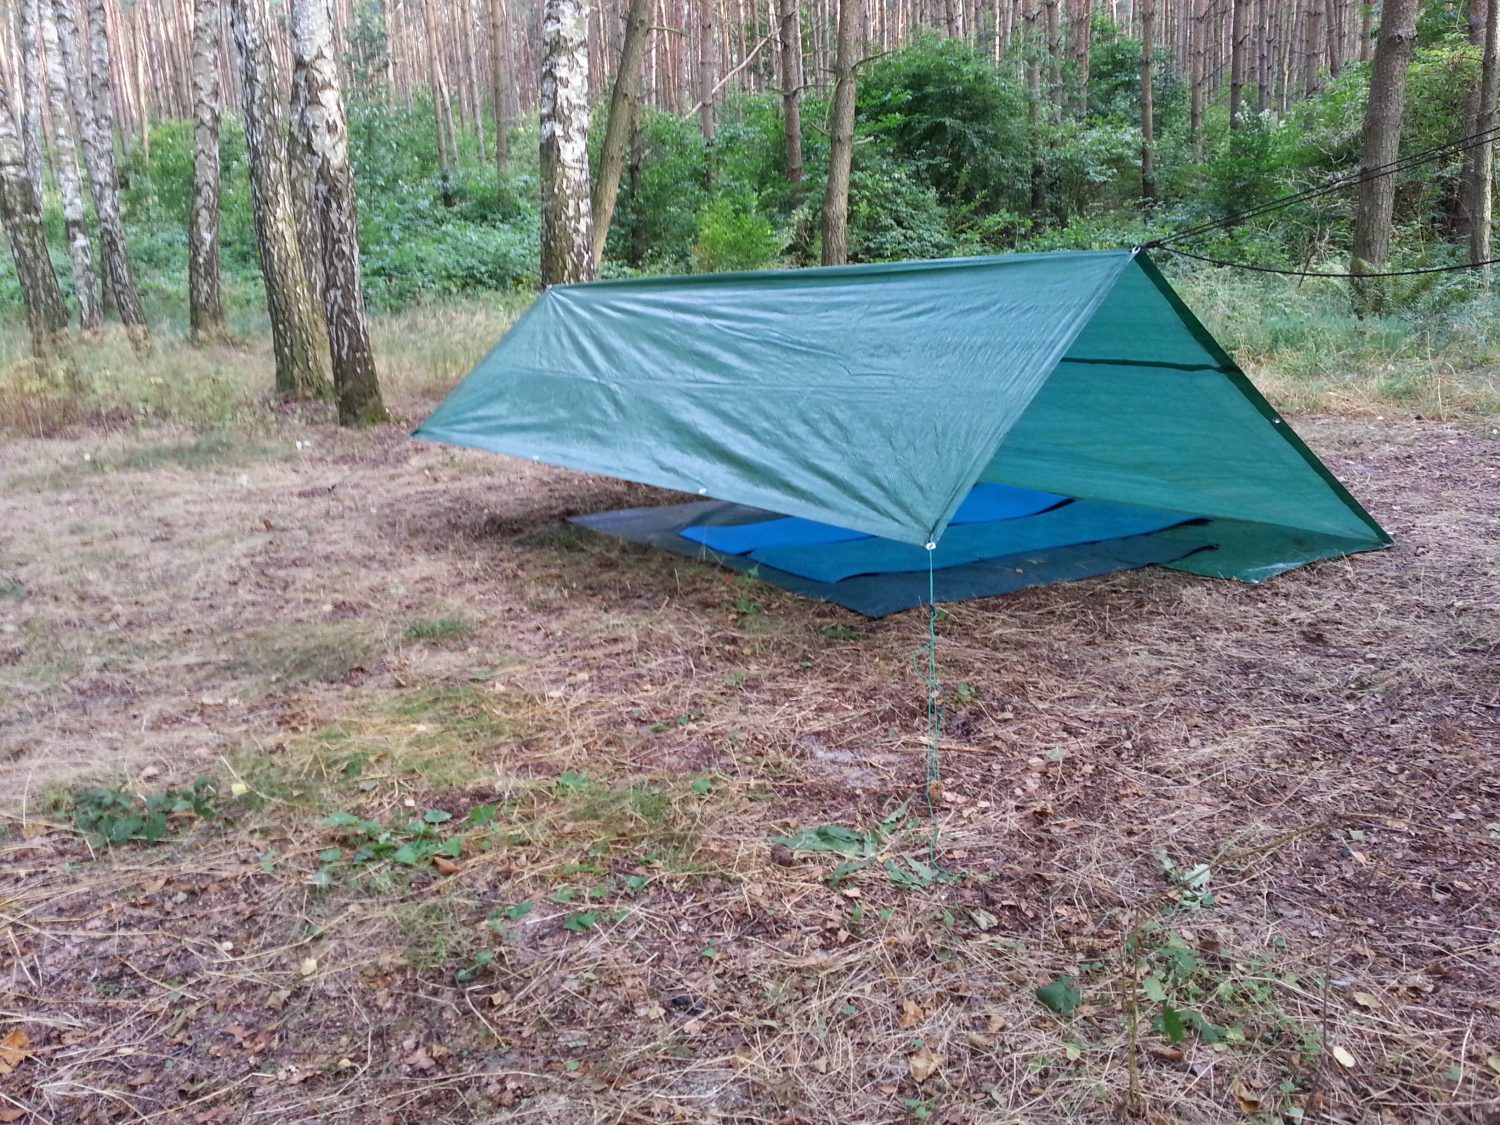 Biwak pod tarpem w lesie, plandeka ogrodowa jako namiot.